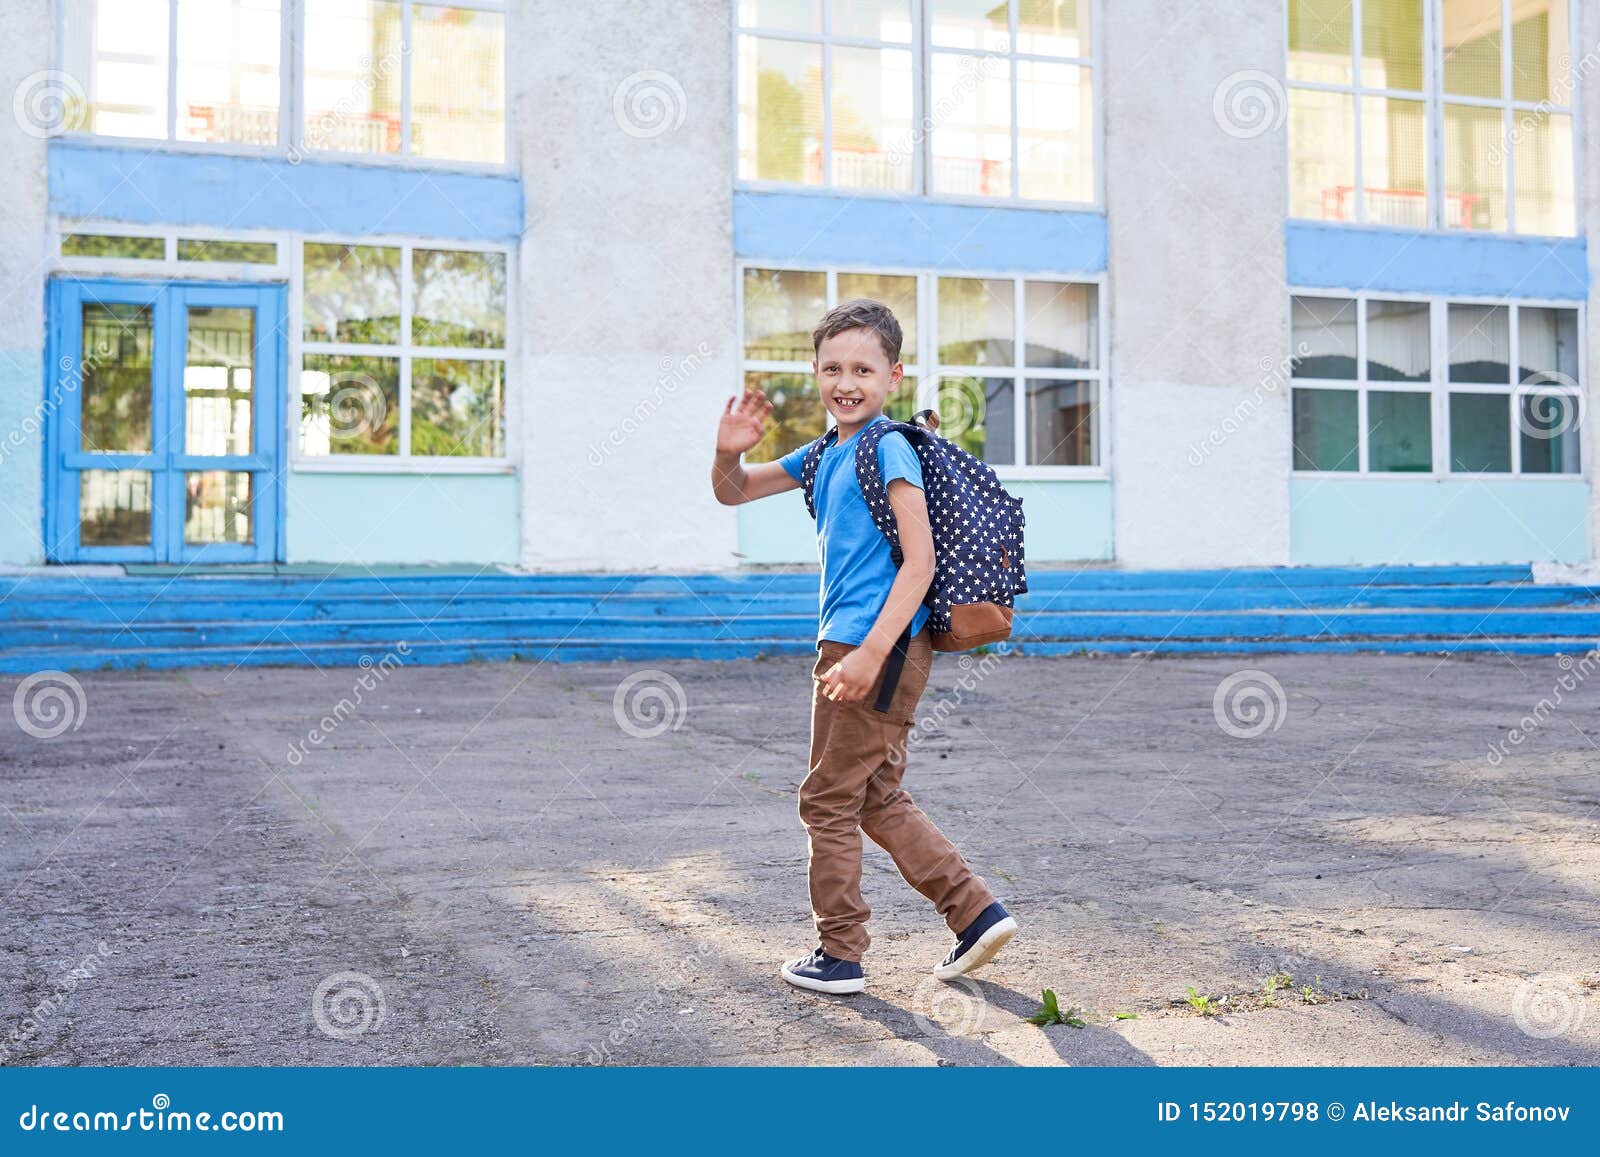 Ученик сбежал с урока. Мальчик идет в школу. Мальчик который ходит в школу. Школьники идут в школу. Мальчишка идёт в школу.